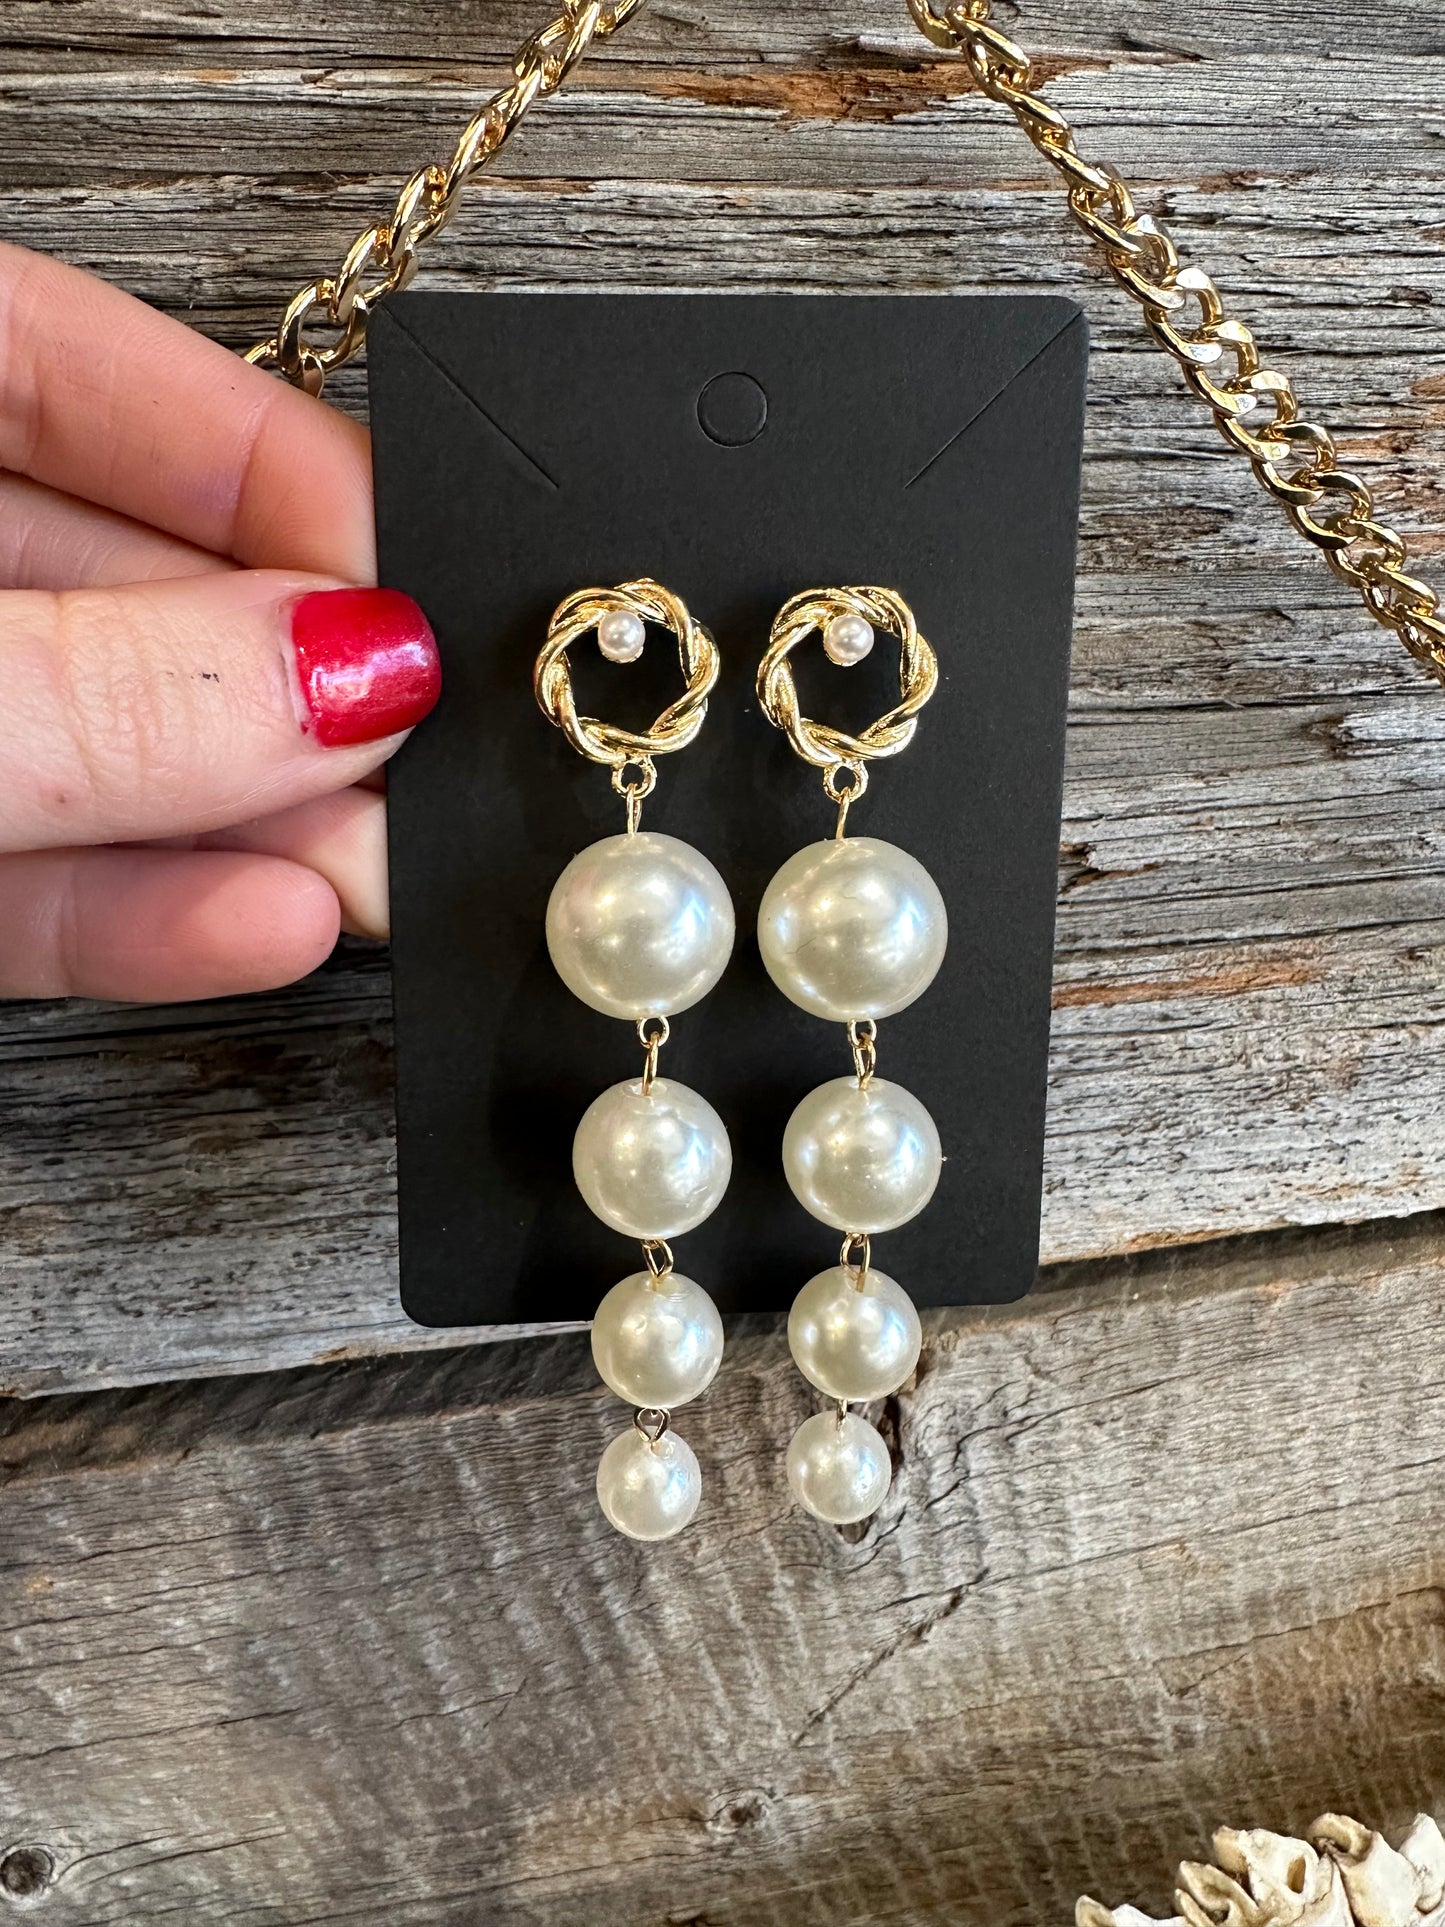 Fake pearls earrings